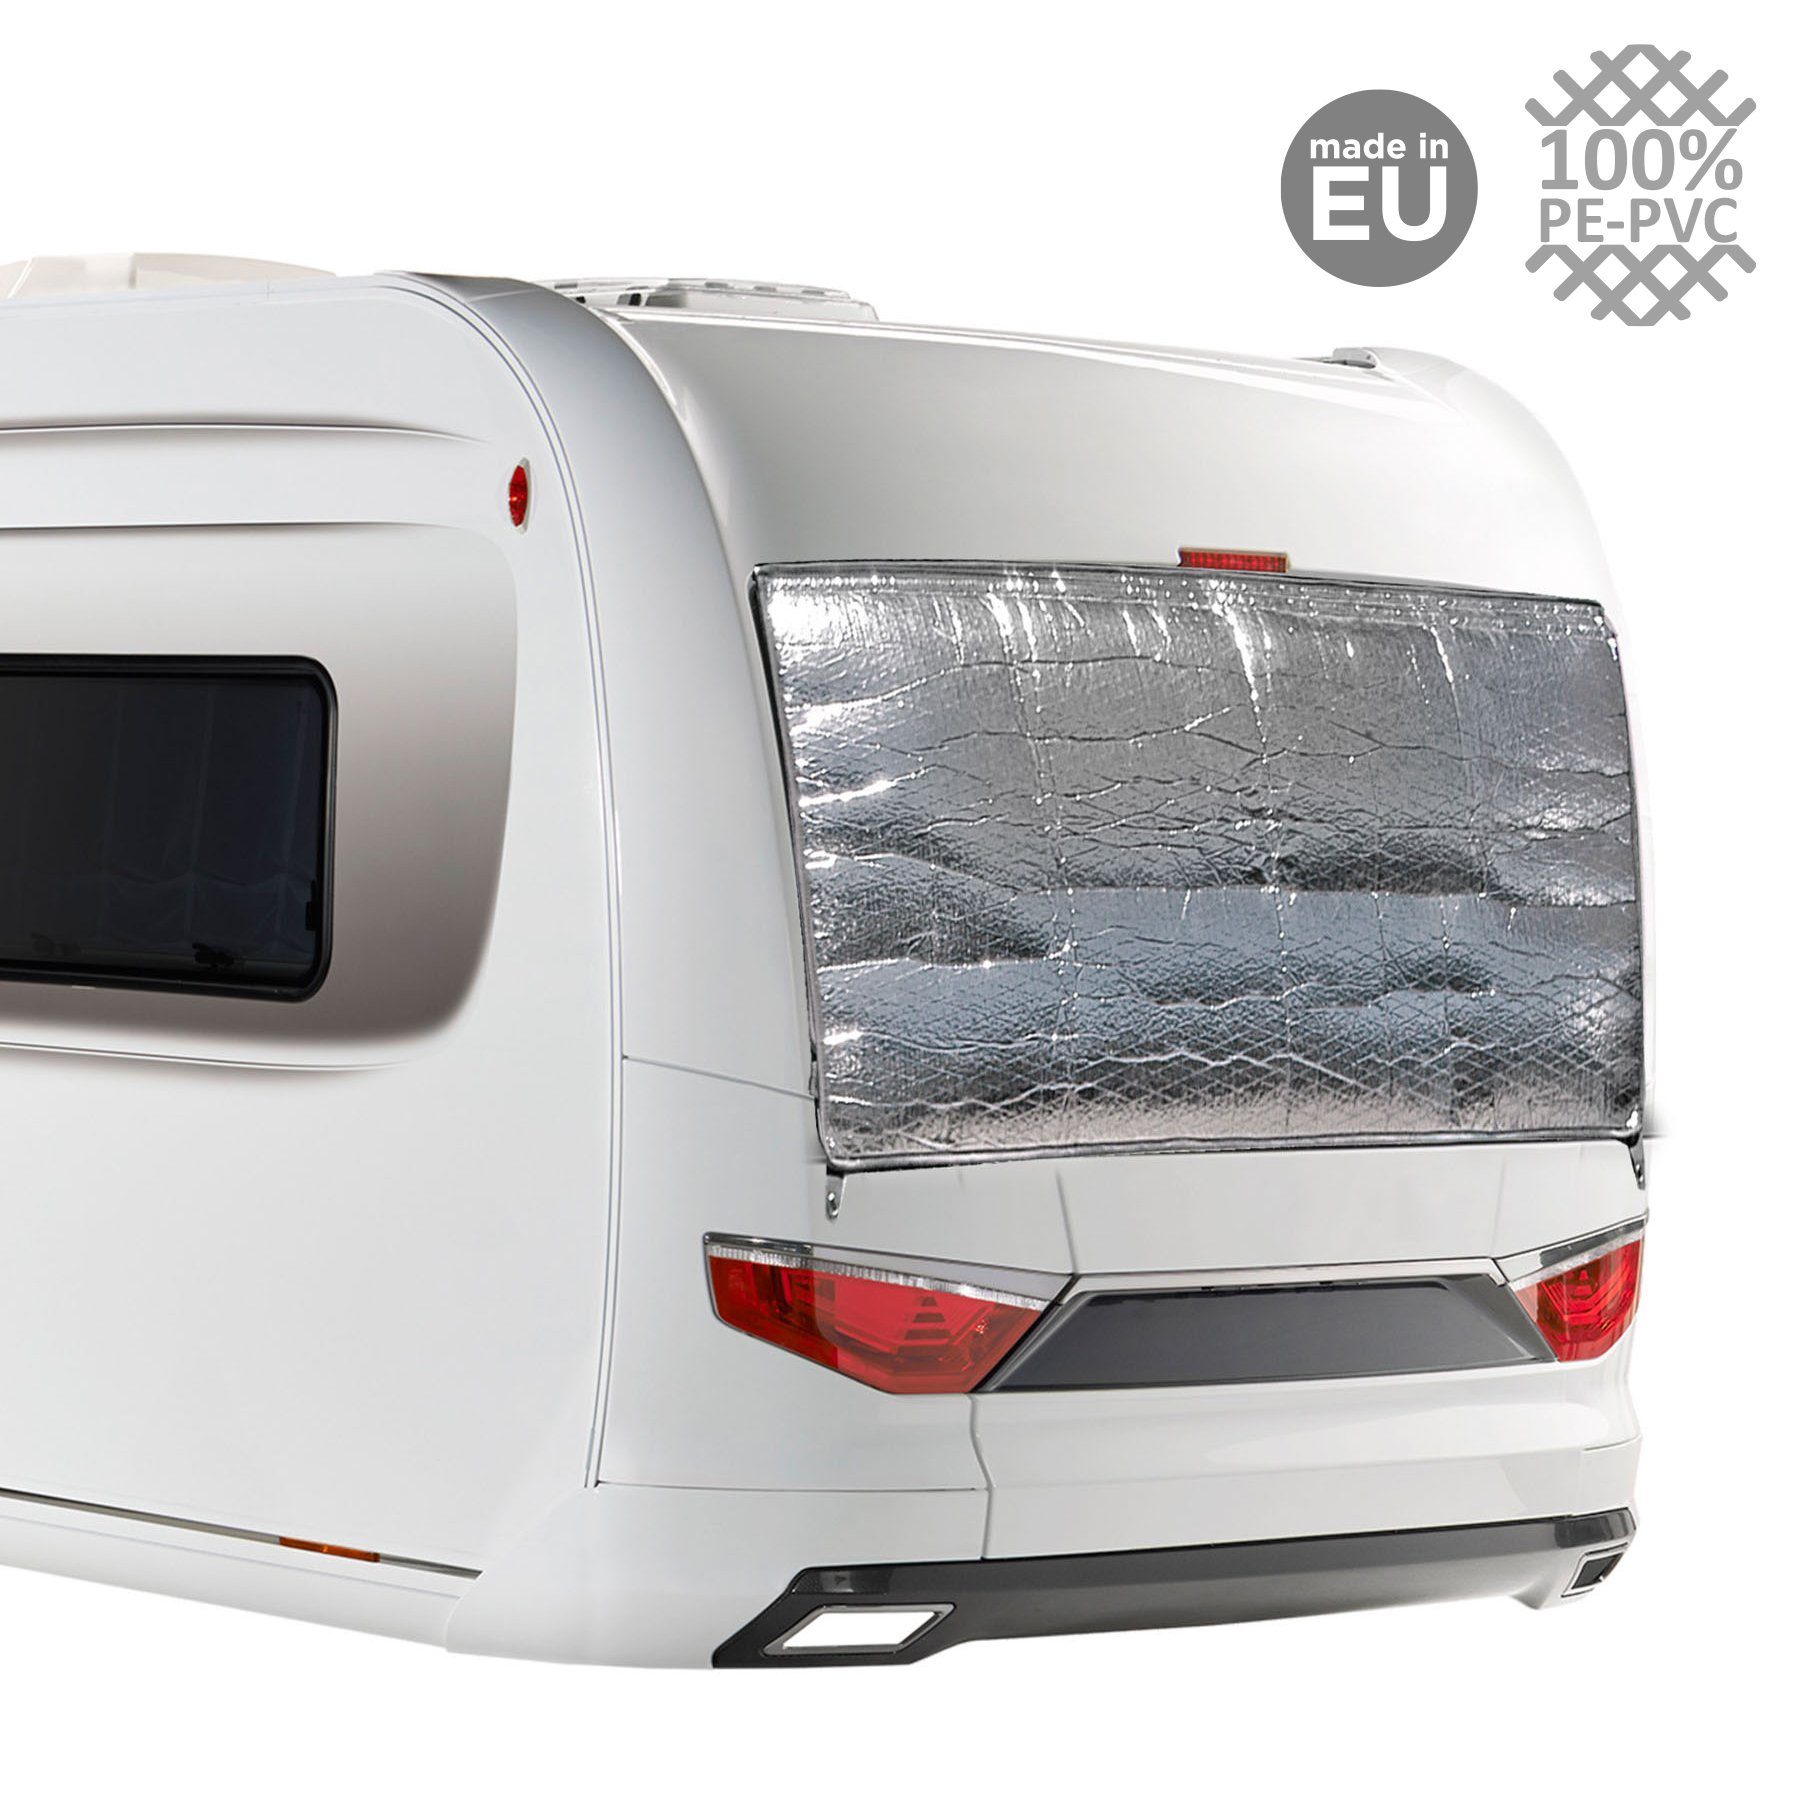 Fenster 180x80cm Thermomatte, Caravan BRUNNER Matte Bus Wohnmobilschutzhülle Außen Wohnwagen Cara-Mats